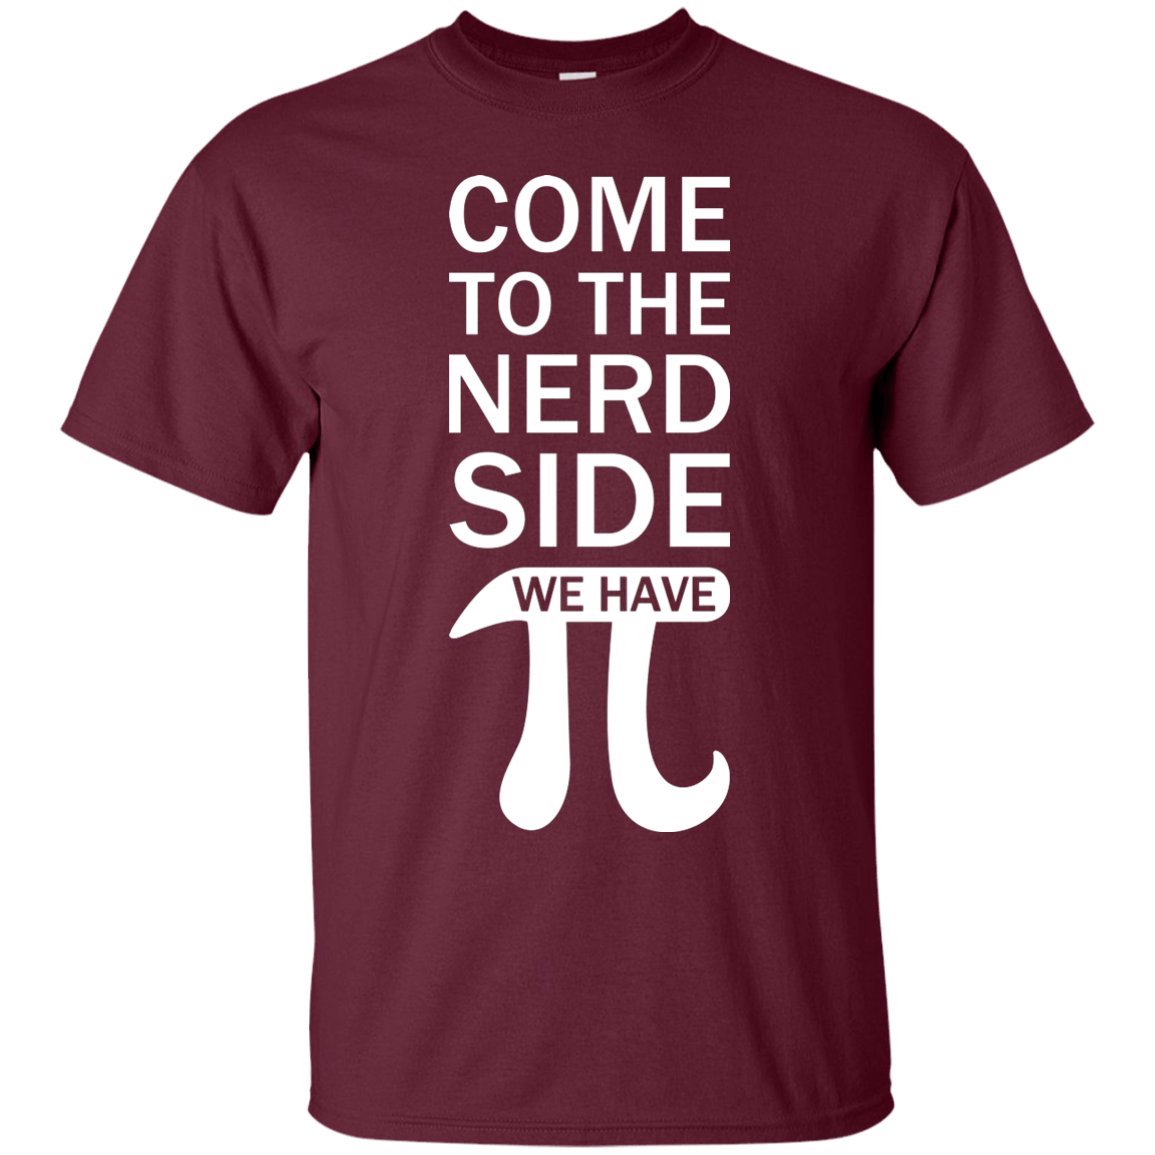 Ven al lado nerd: tenemos pi